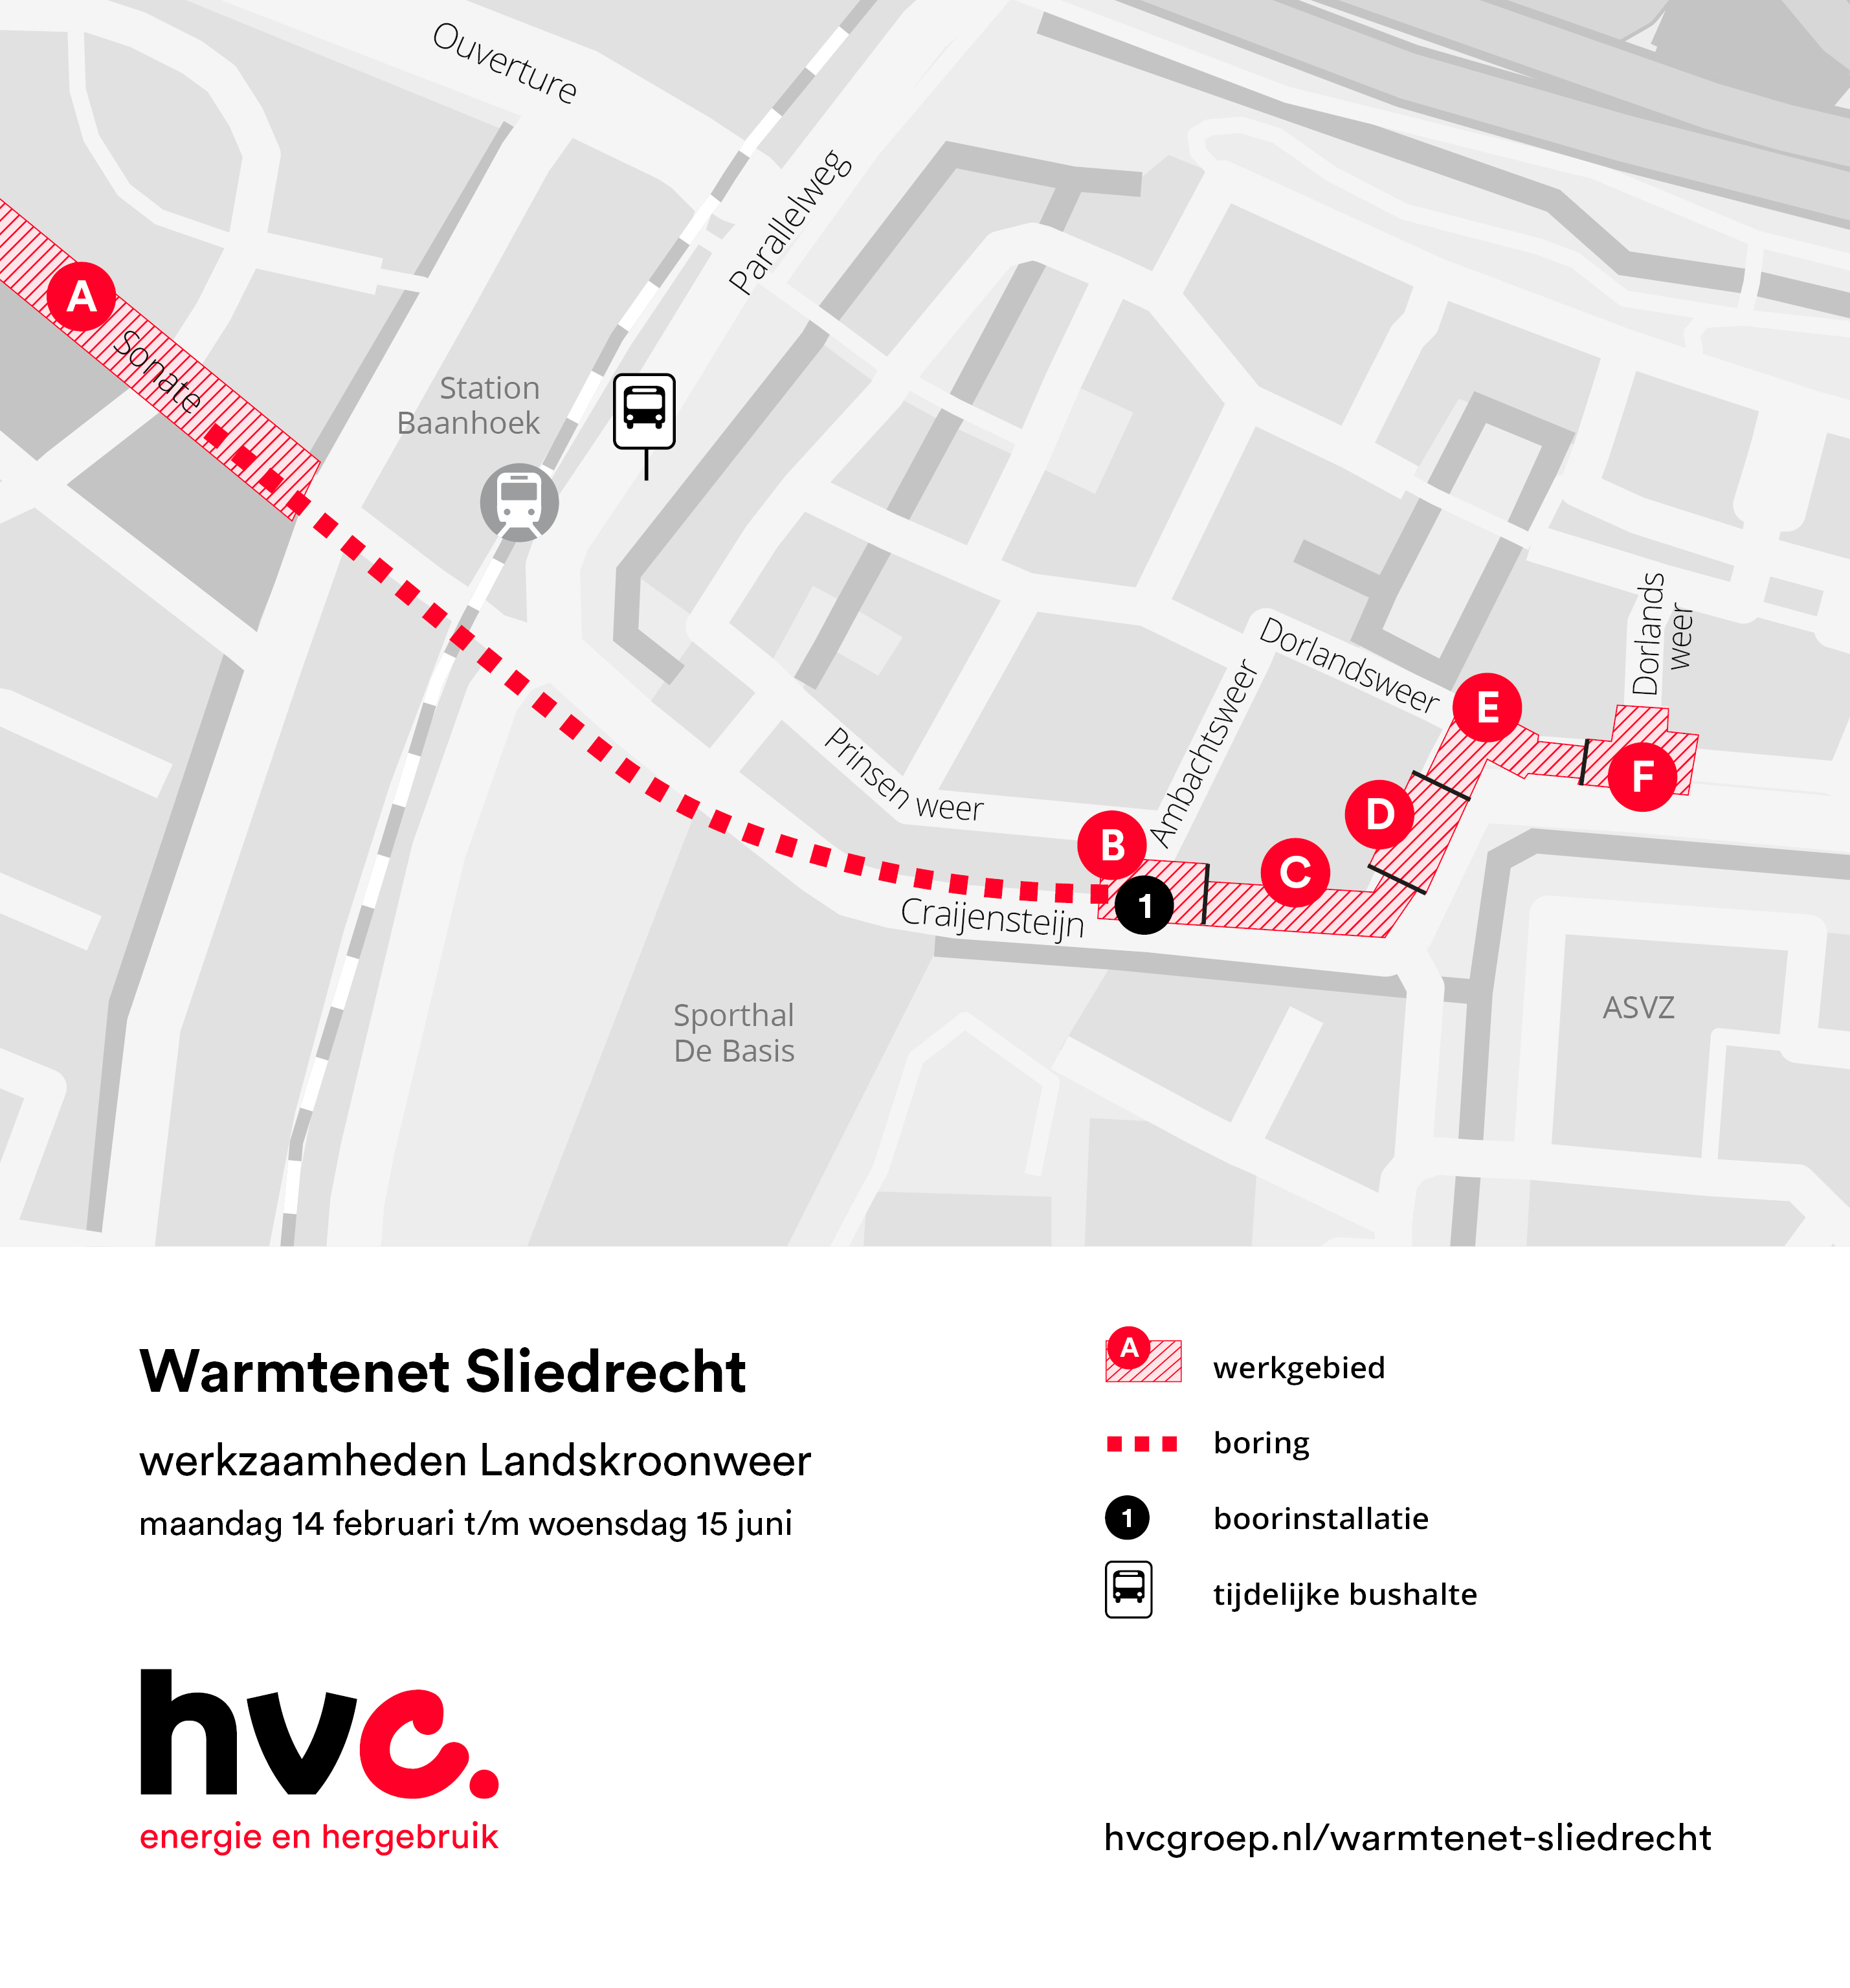 Plattegrond met daarop de locatie van de werkzaamheden in Dorlandsweer en Landskroonweer in Sliedrecht